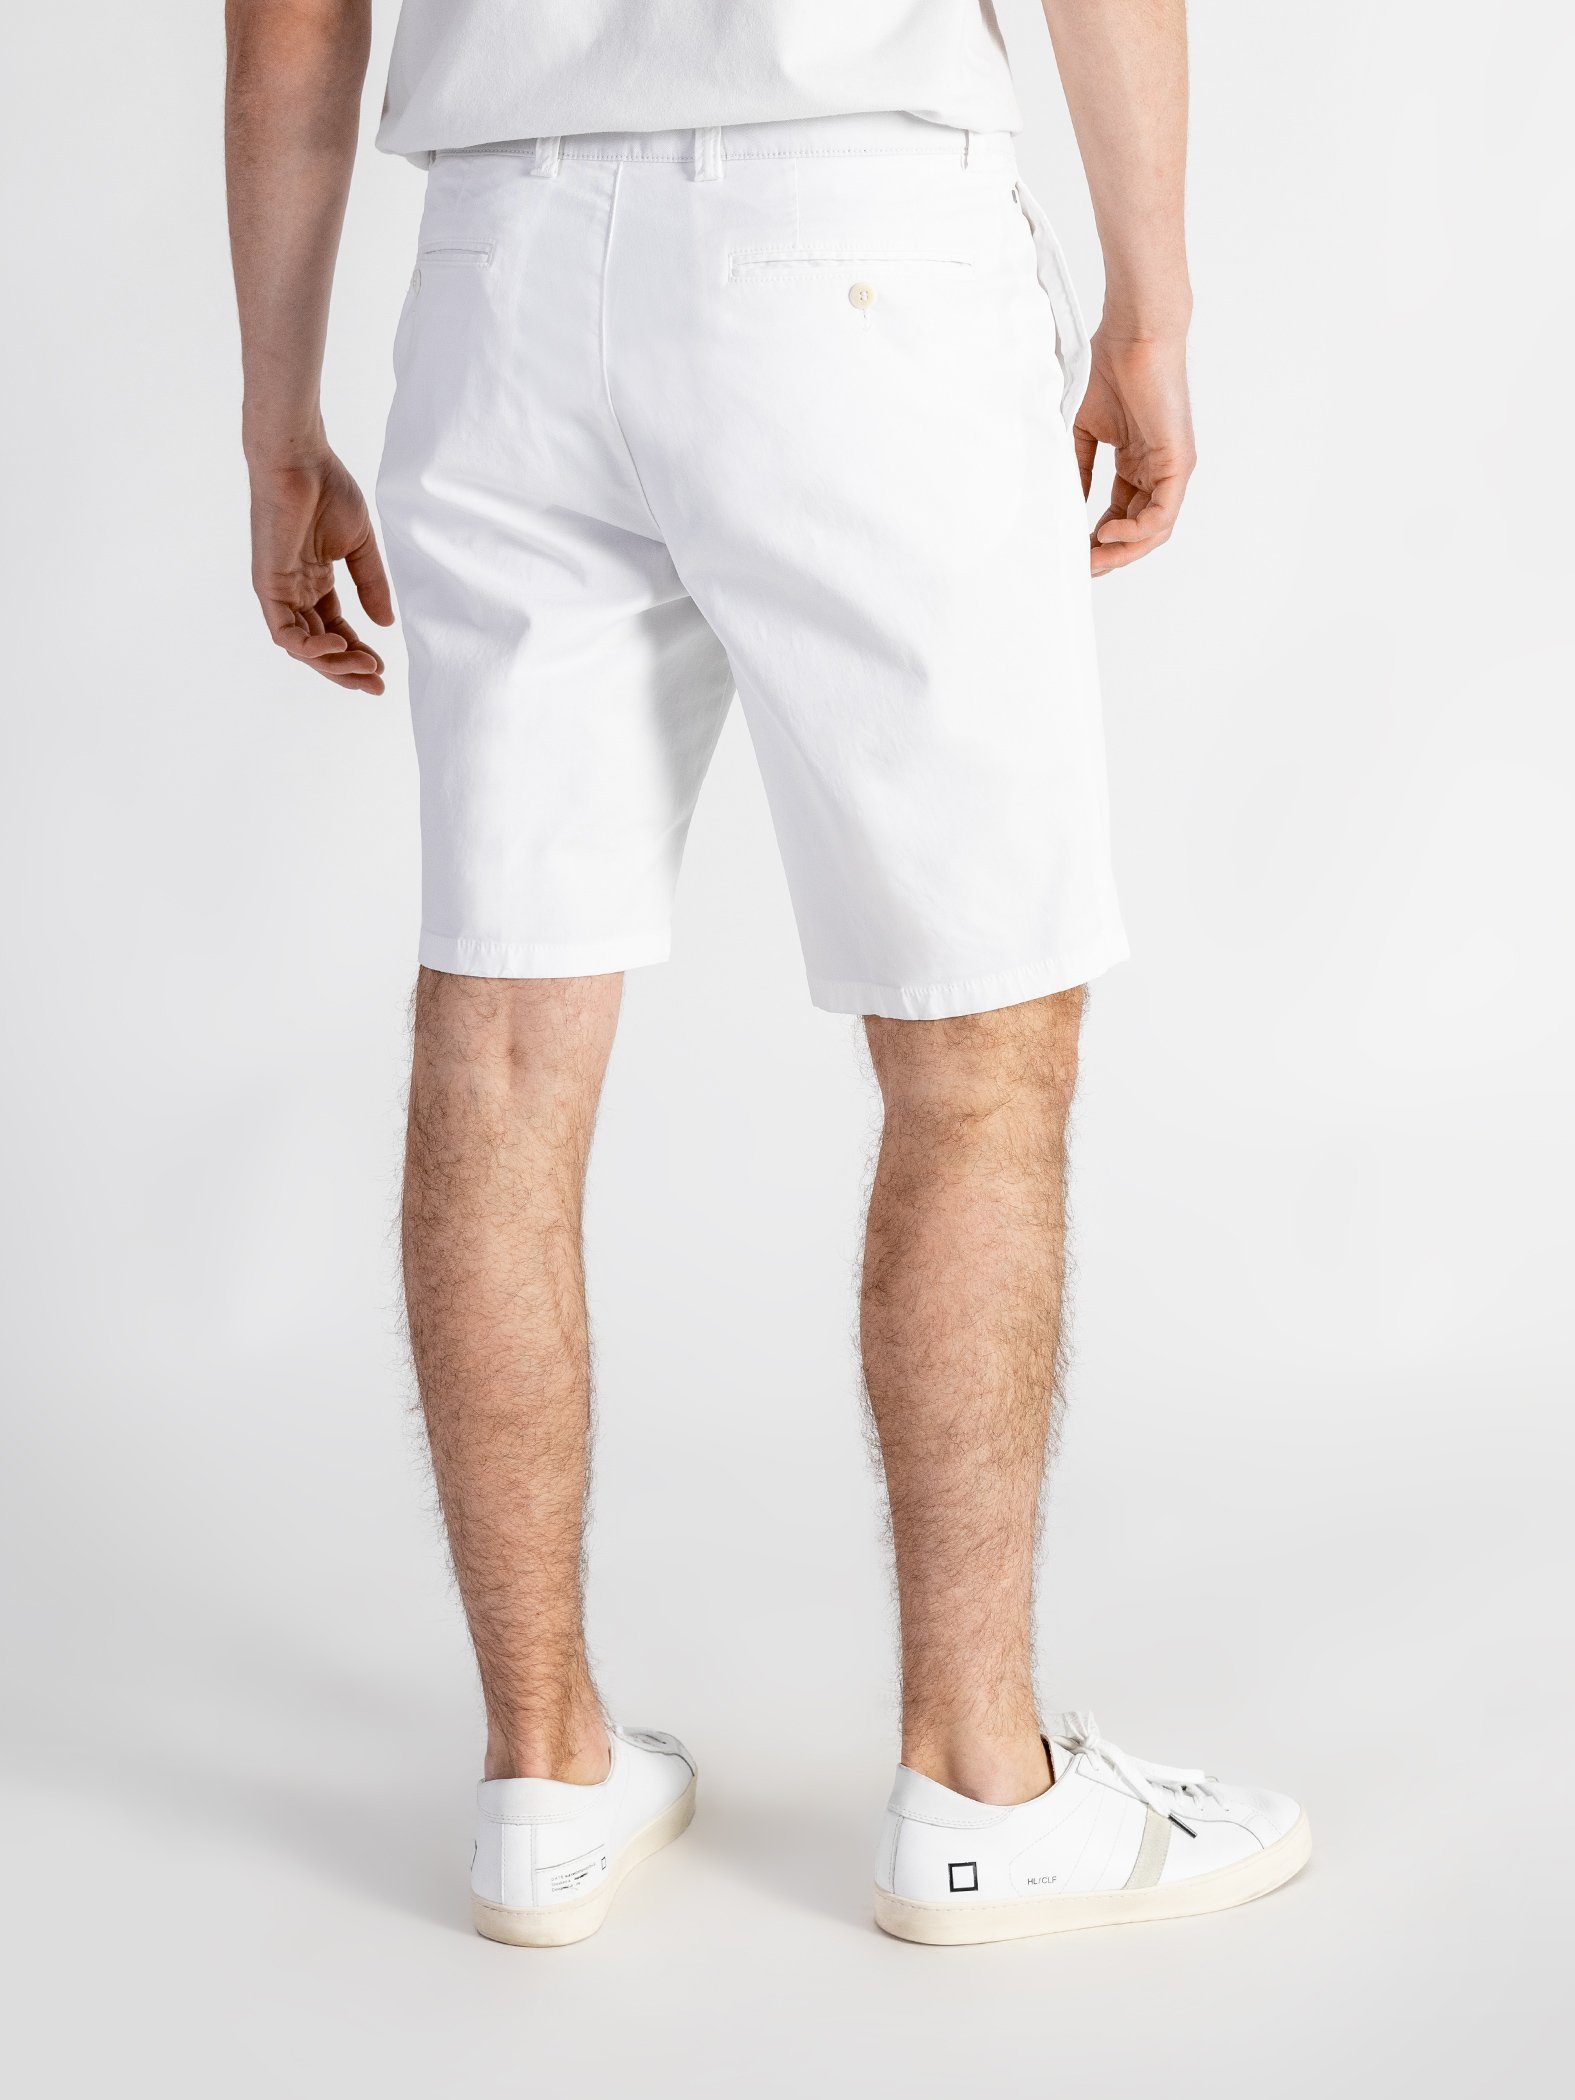 mit TwoMates elastischem Shorts Bund, Weiß GOTS-zertifiziert Farbauswahl, Shorts